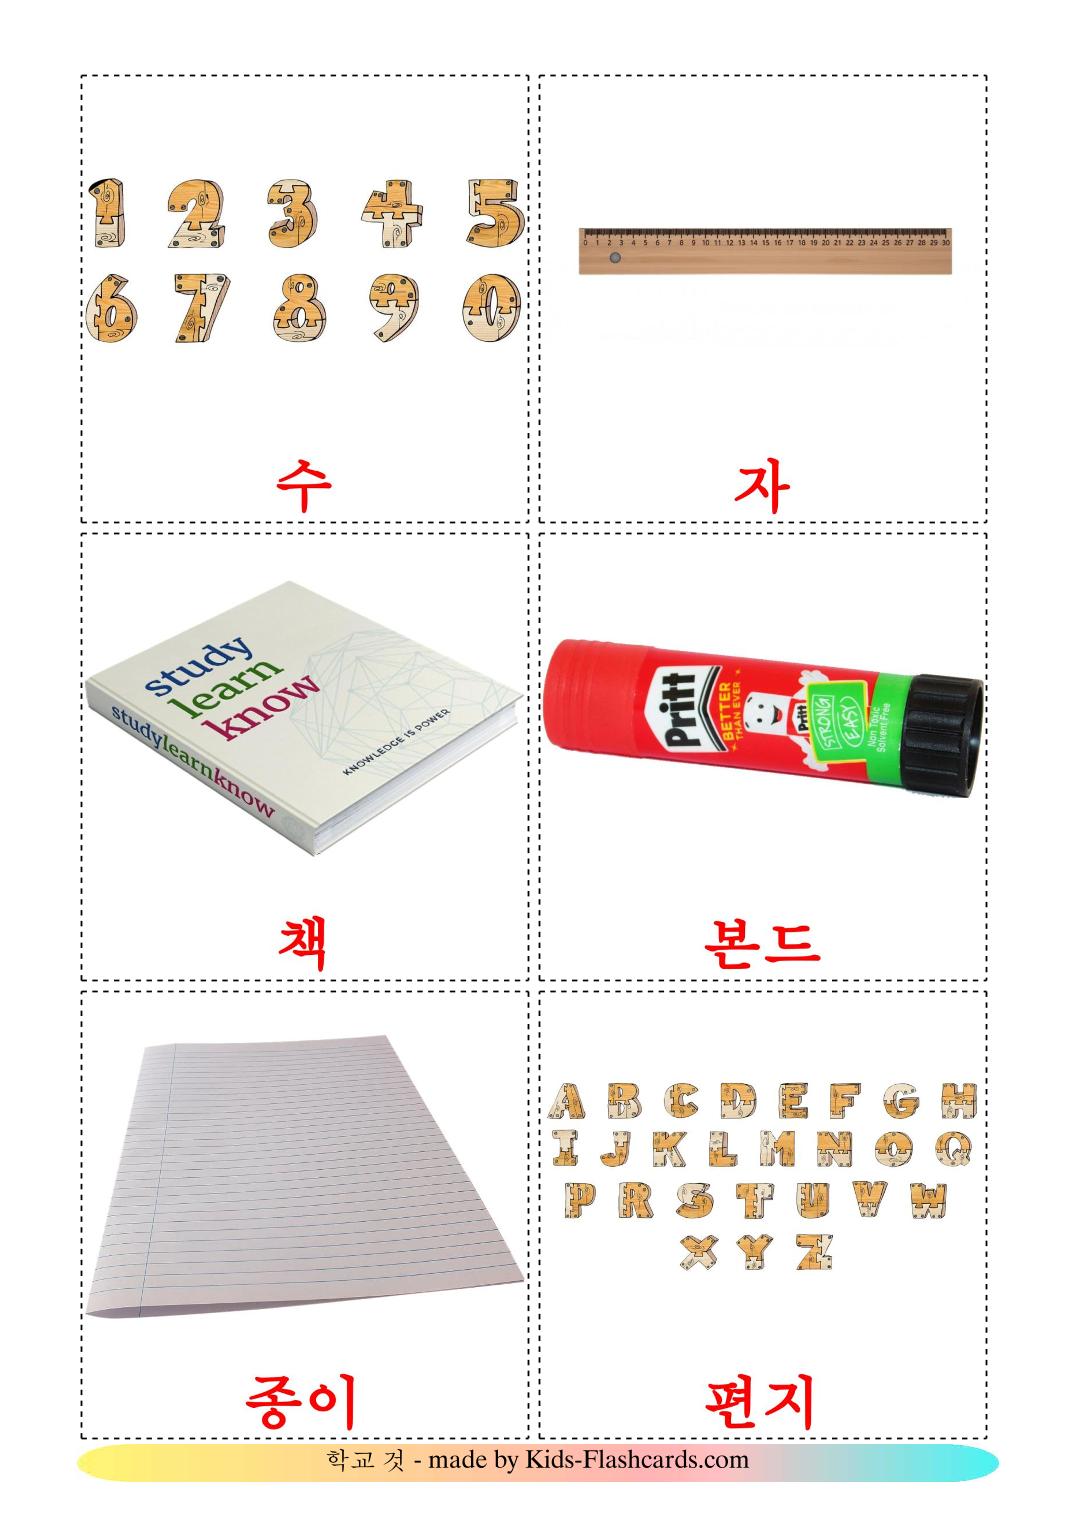 Objekte im Klassenzimmer - 36 kostenlose, druckbare Koreanisch Flashcards 